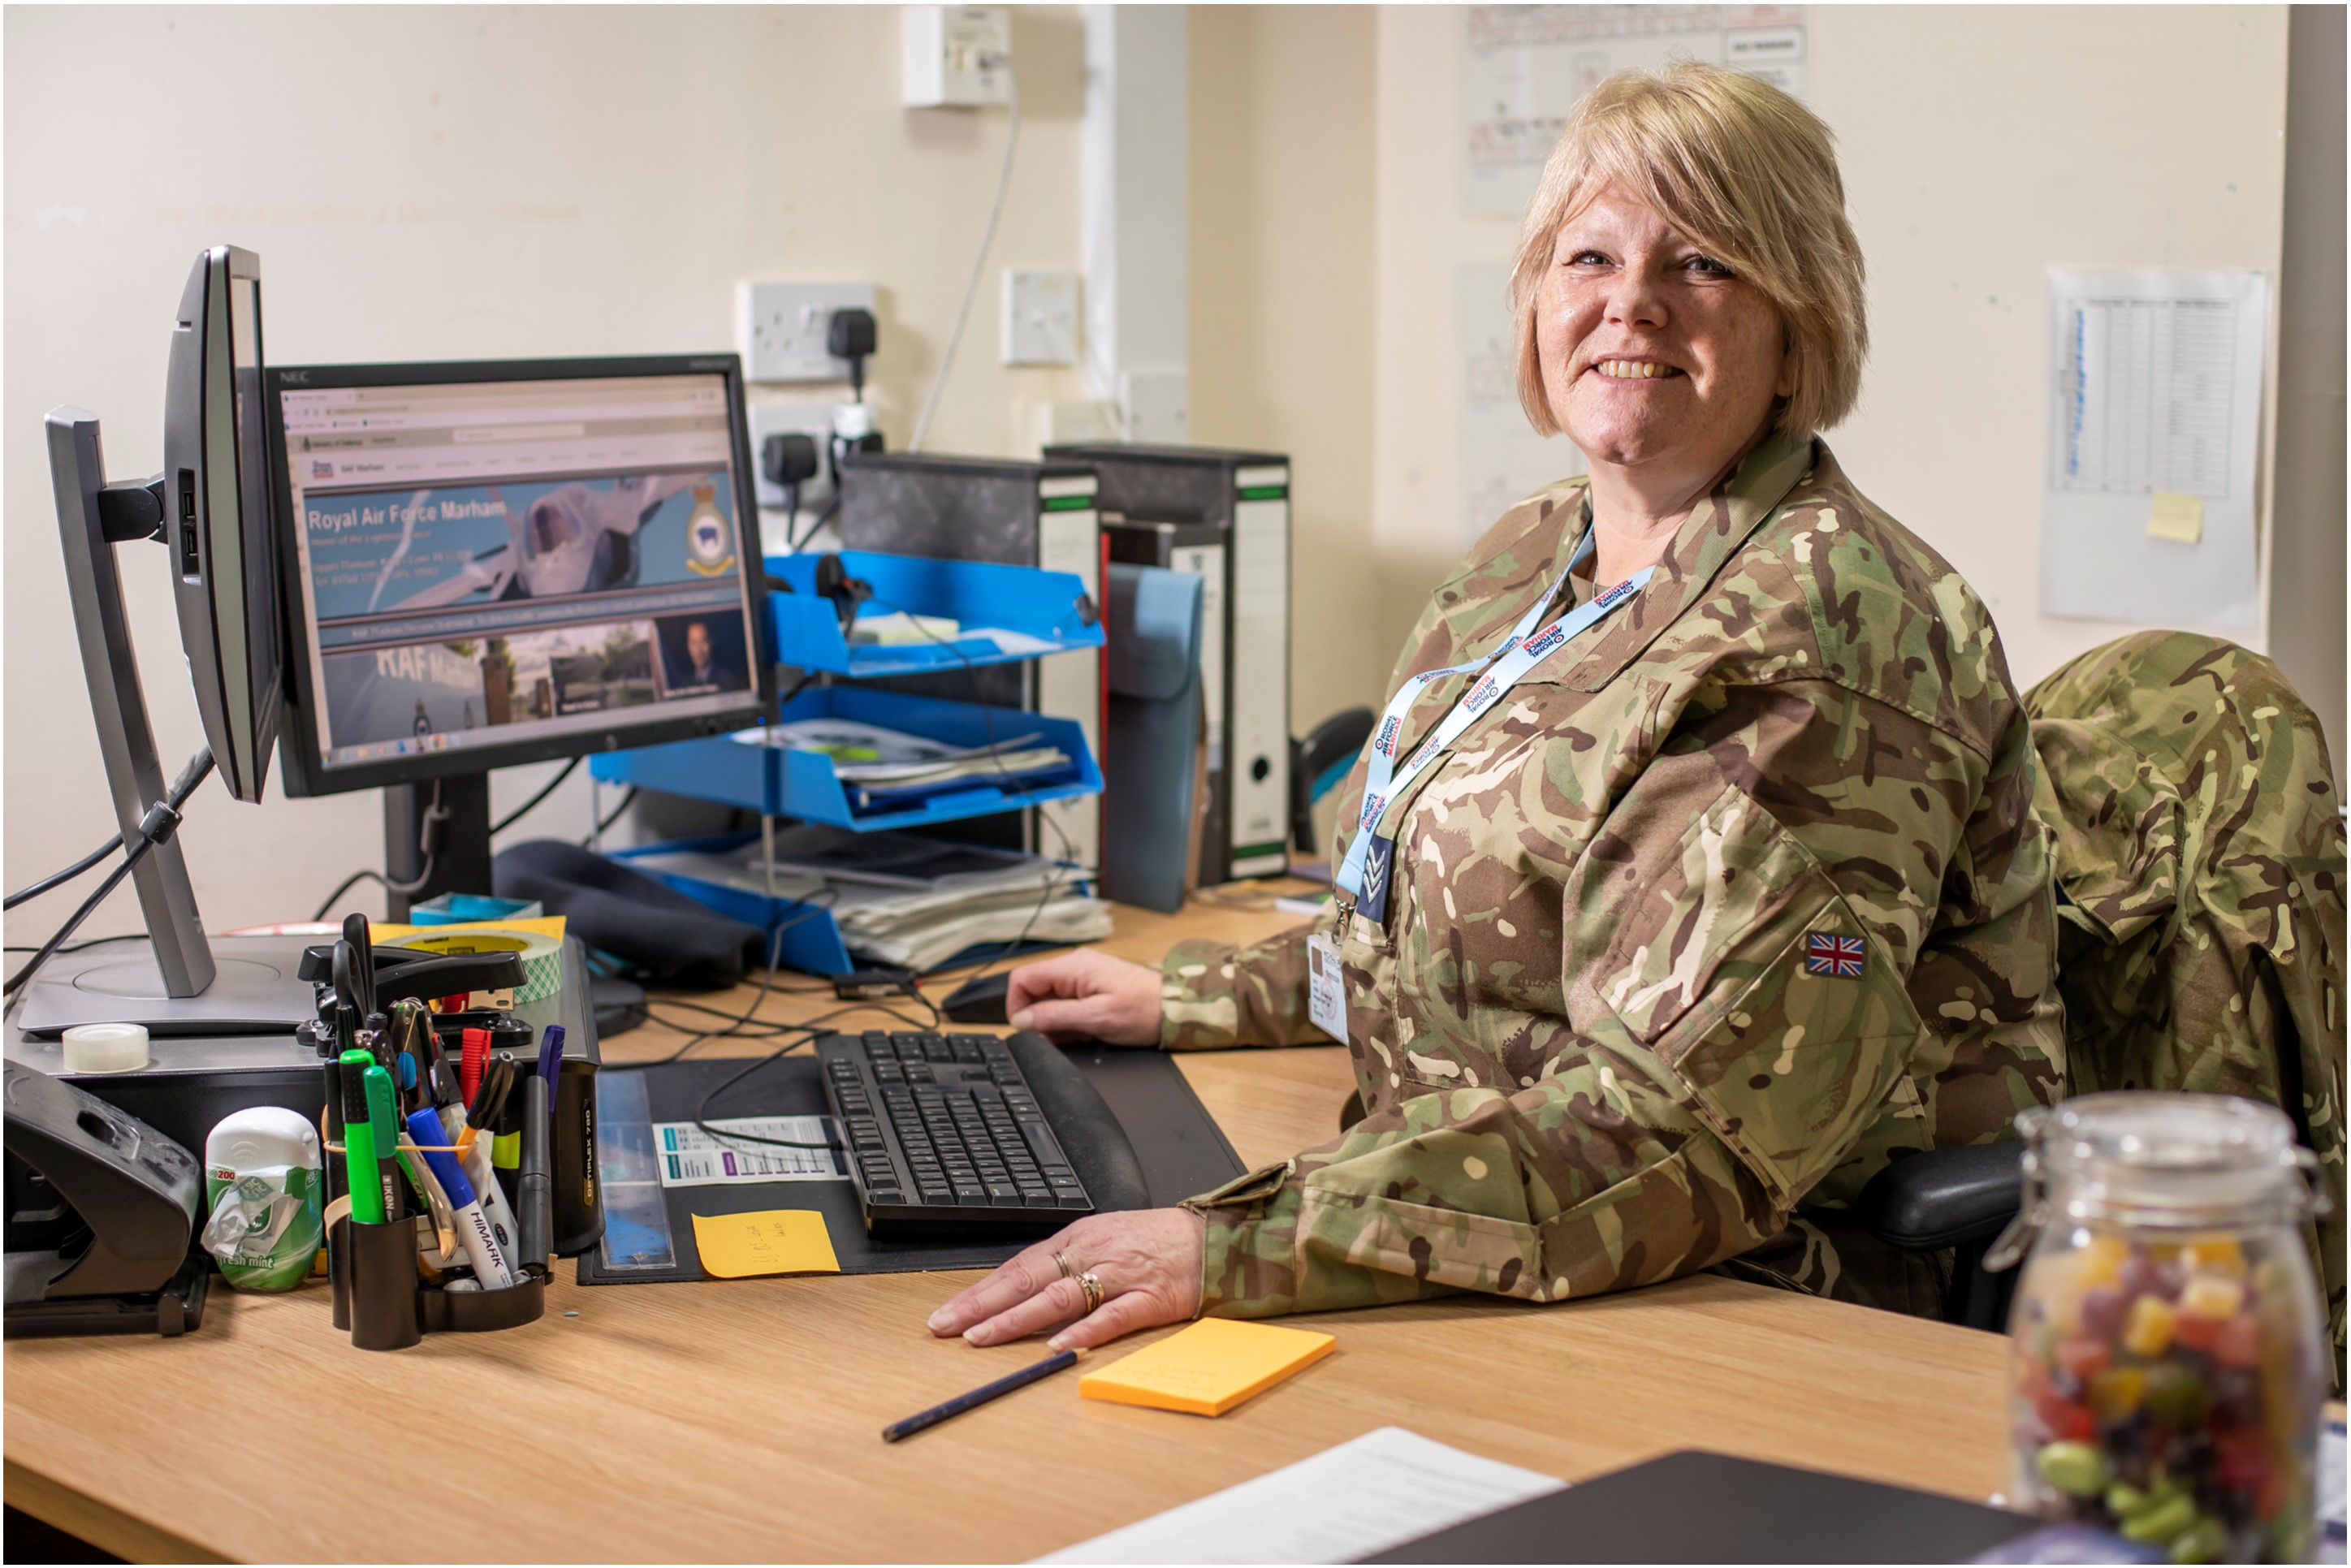 RAF reserve smiling, sat at a desk